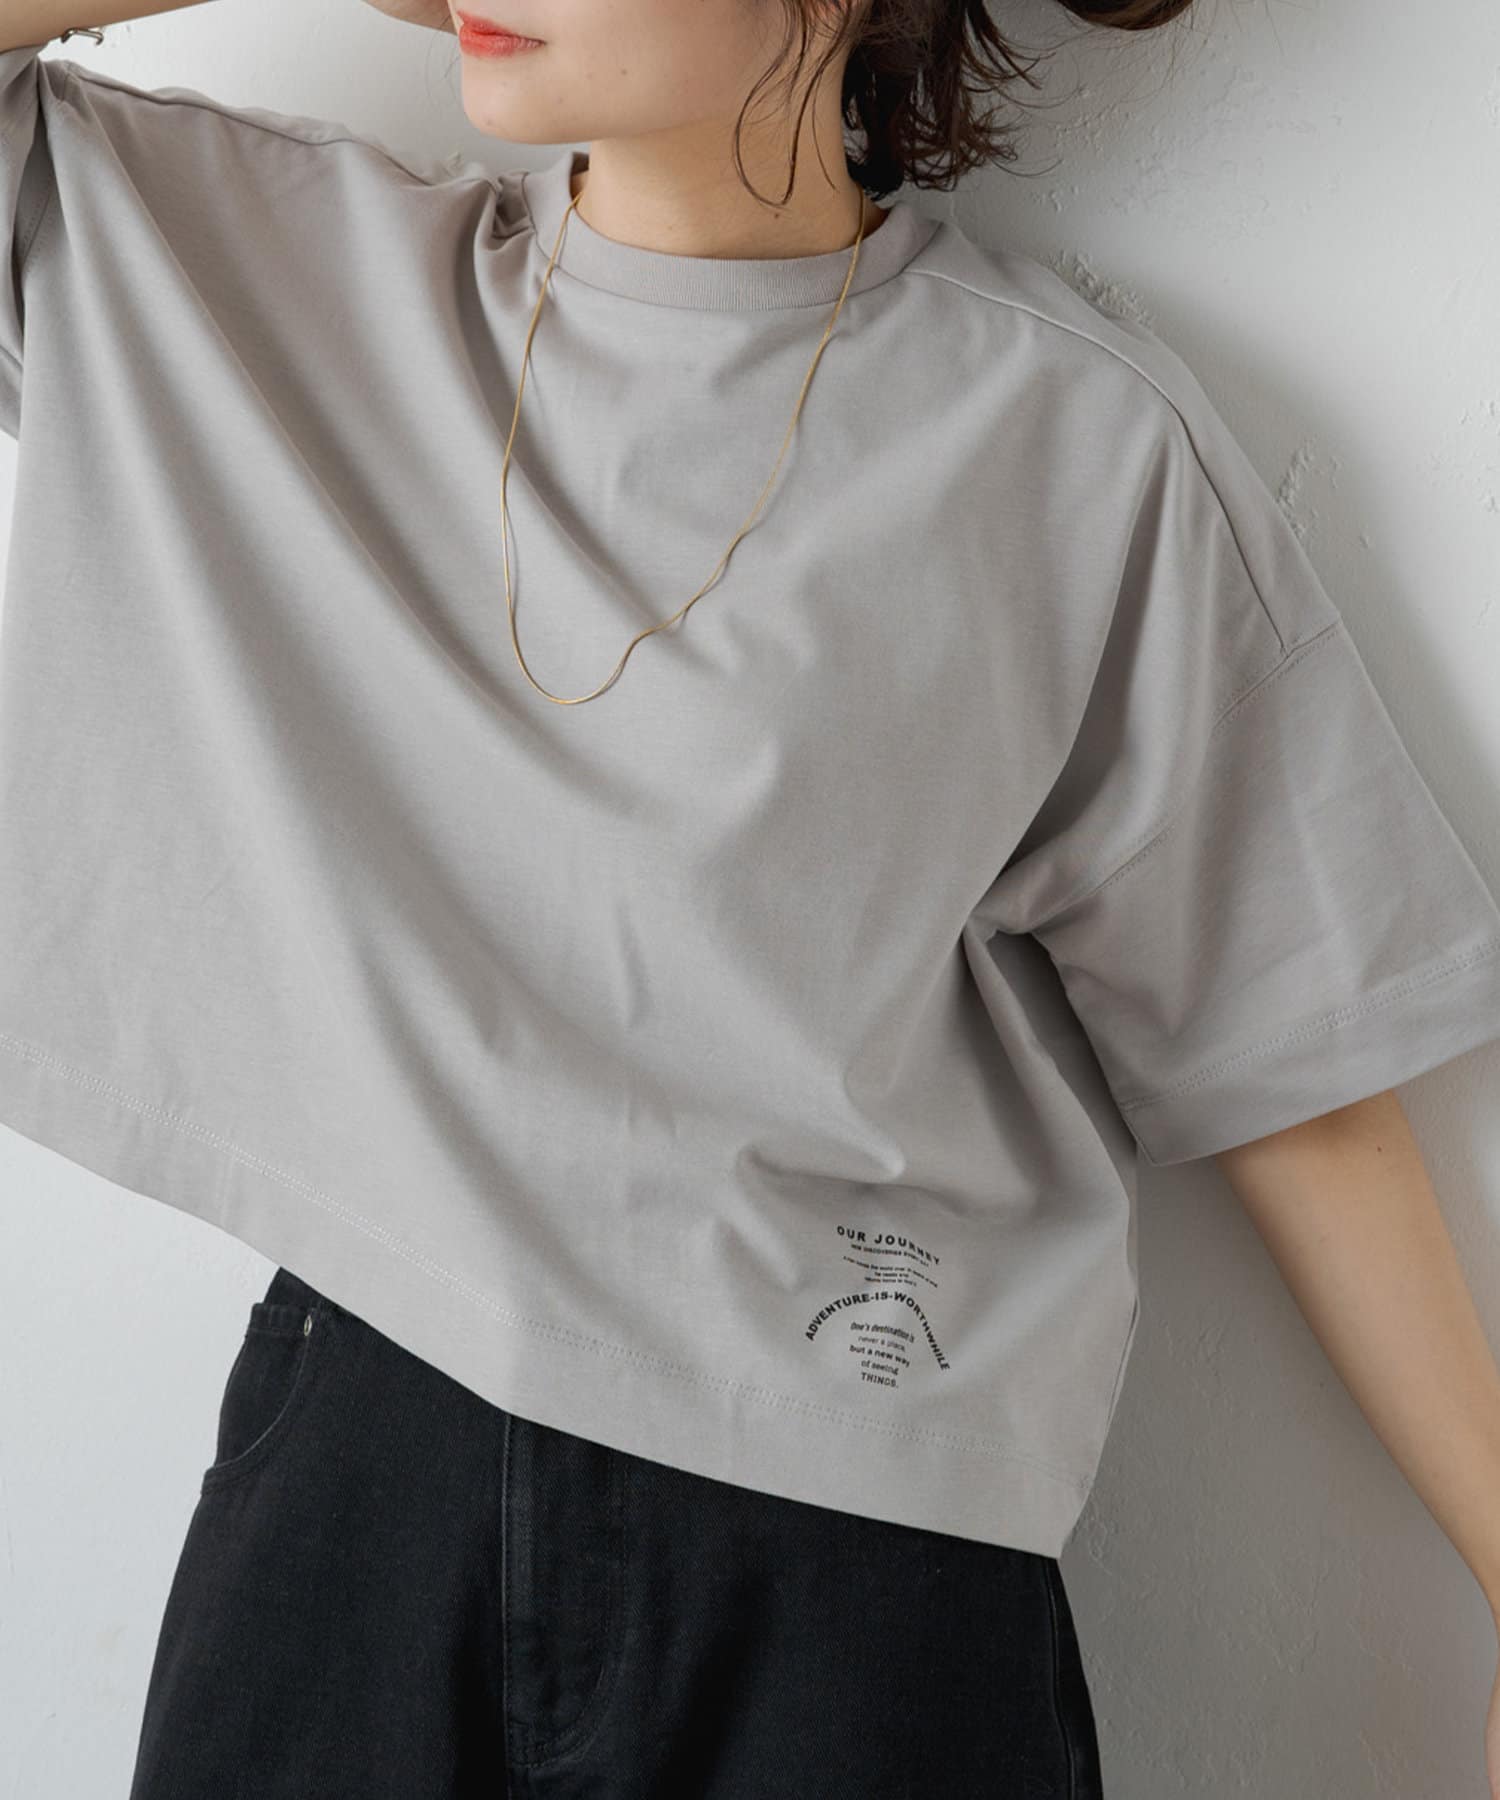 PUAL CE CIN(ピュアルセシン) クロップド丈ワンポイントプリントTシャツ